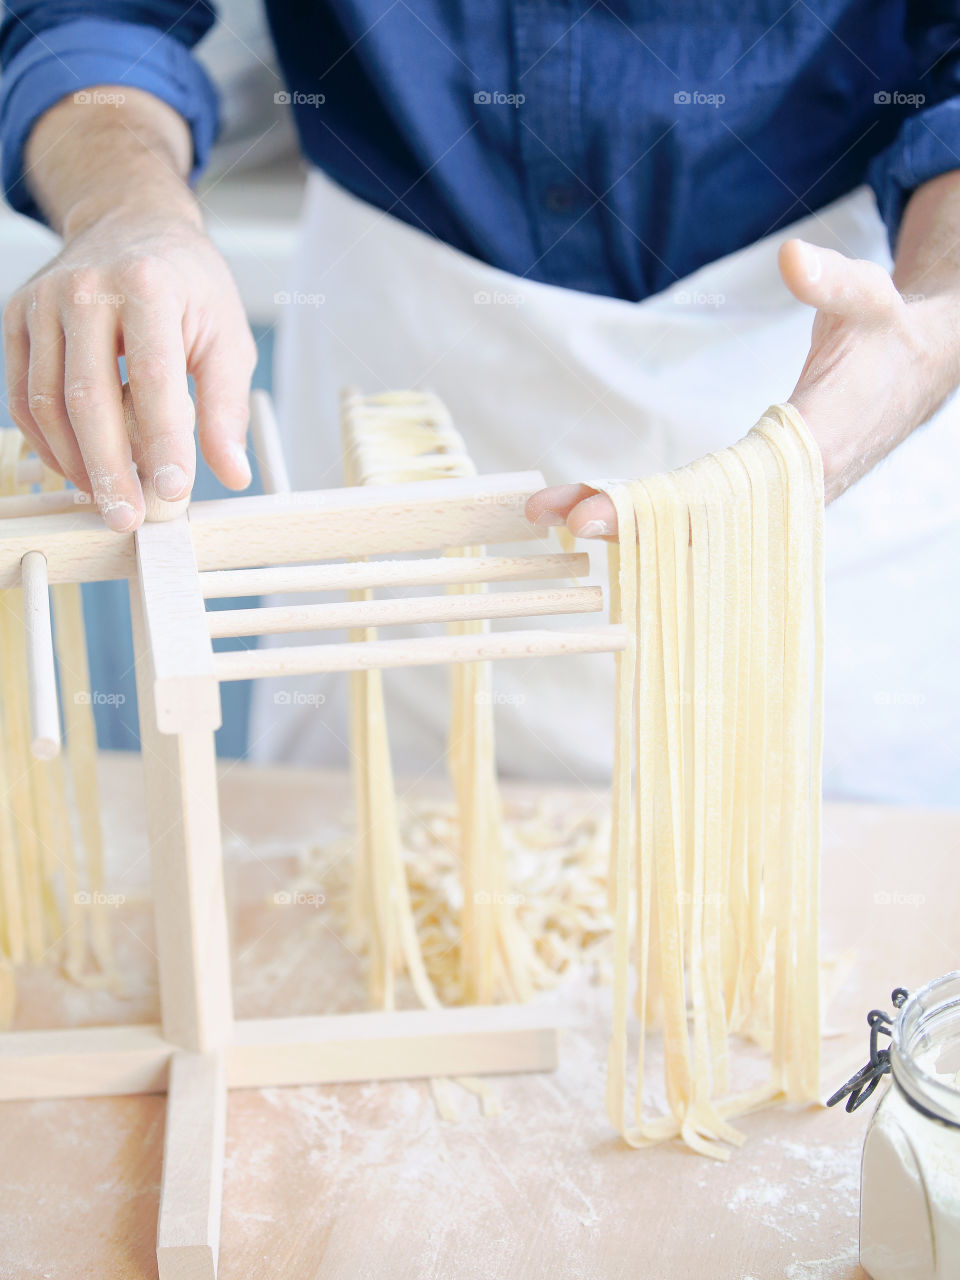 Making pasta 